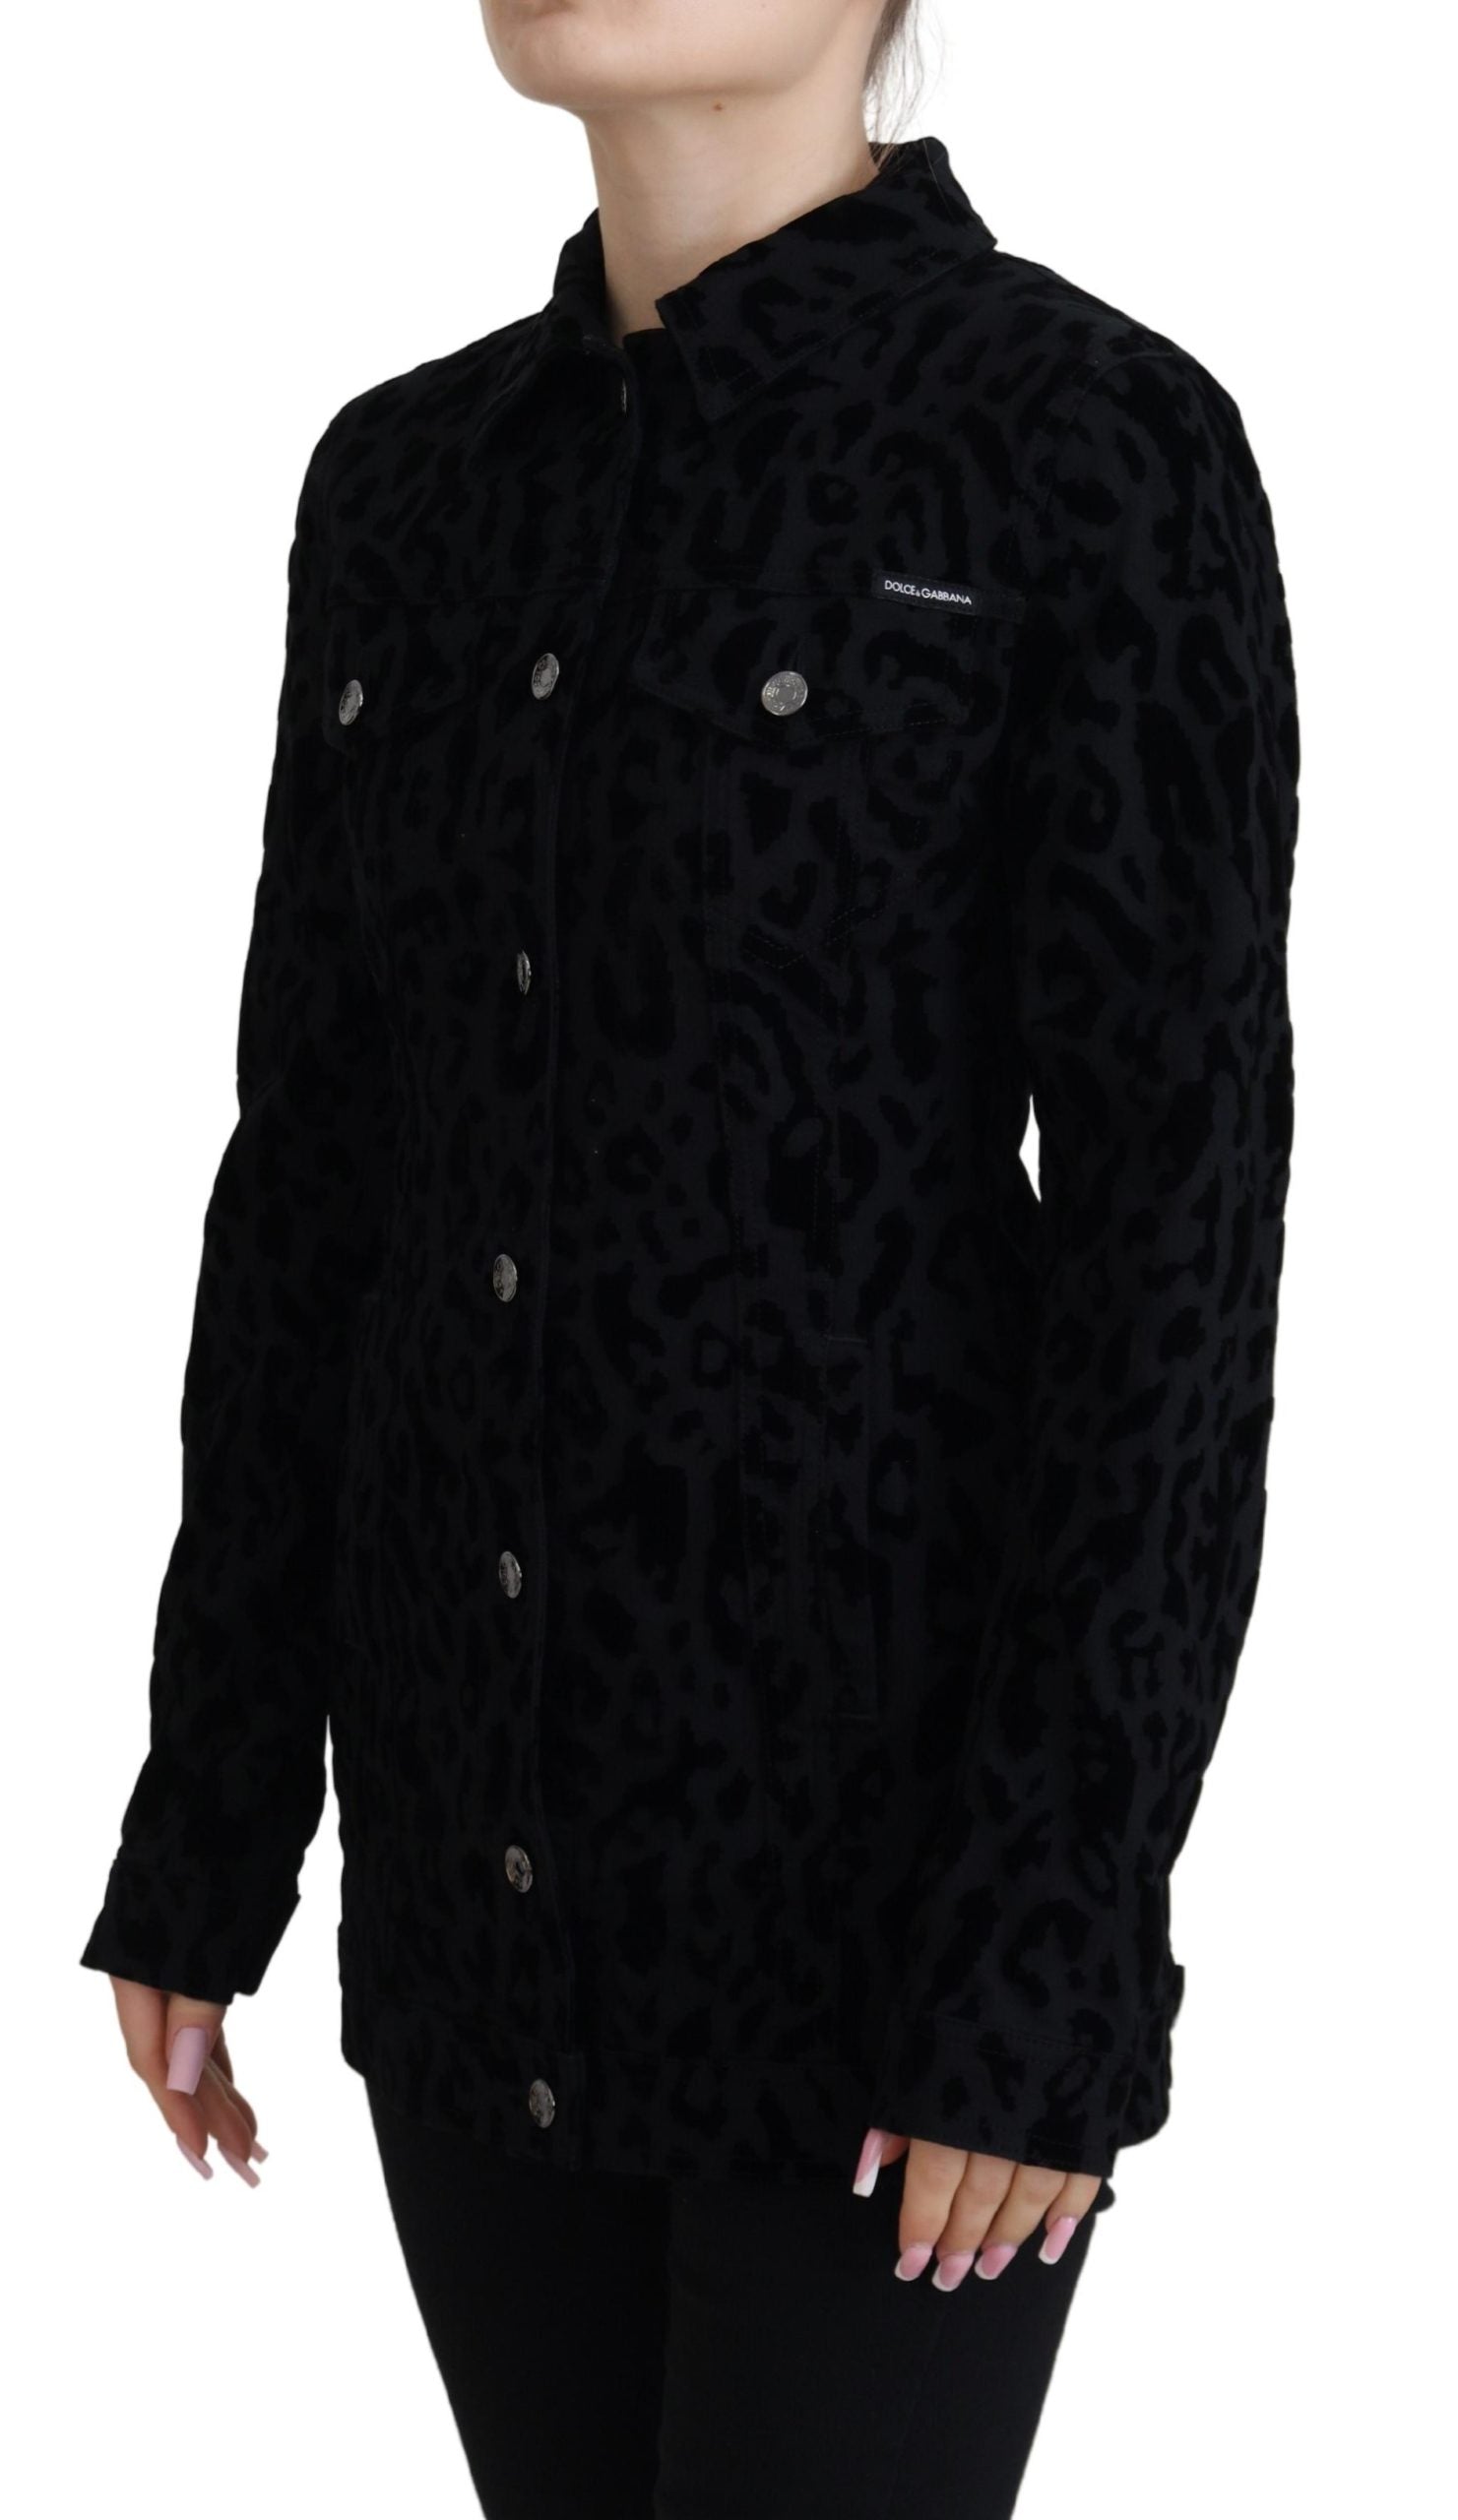 Chic Leopard Pattern Denim Jacket